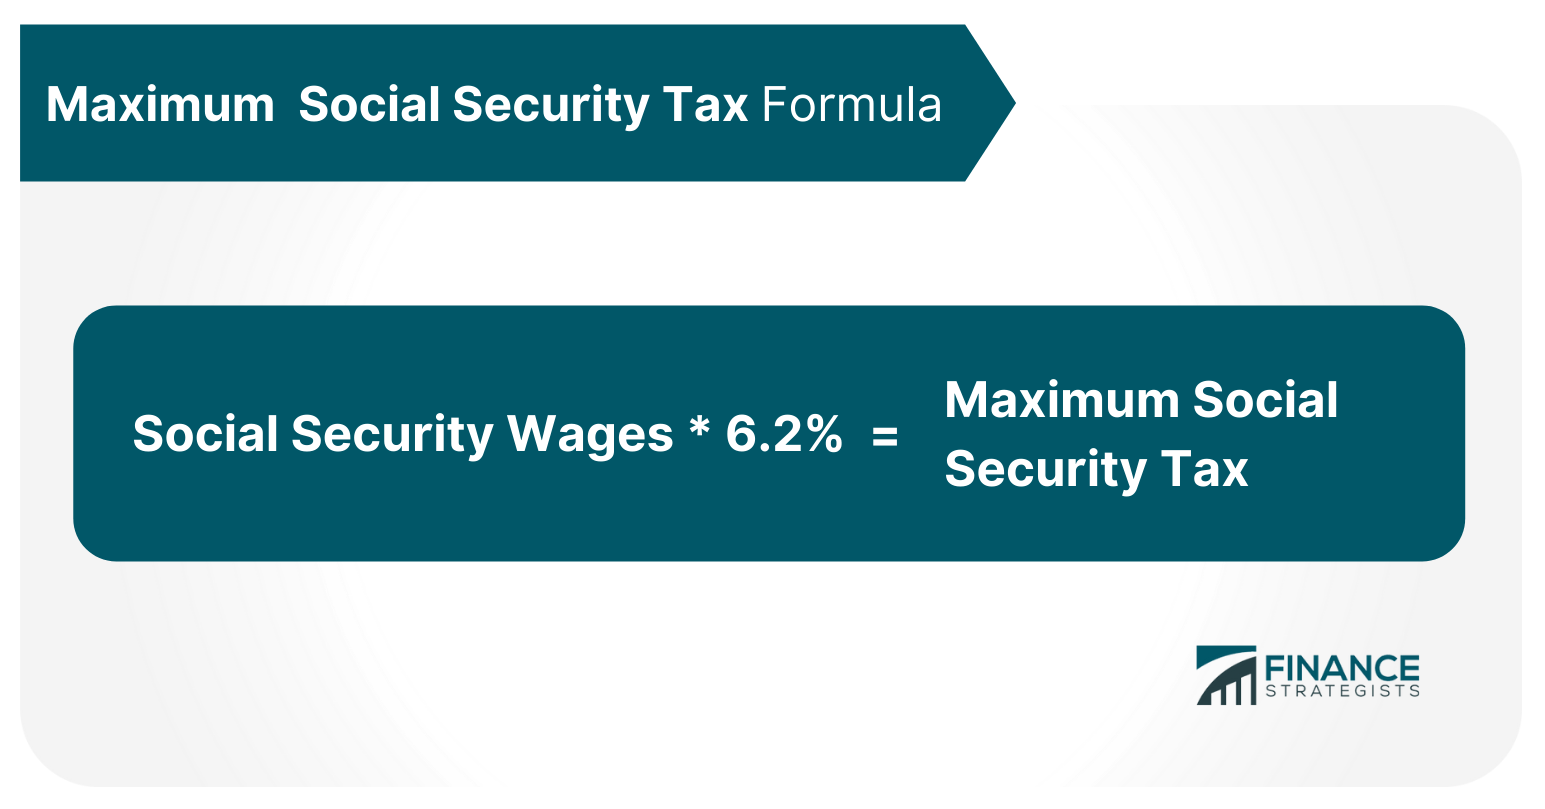 Maximum Social Security Tax Formula